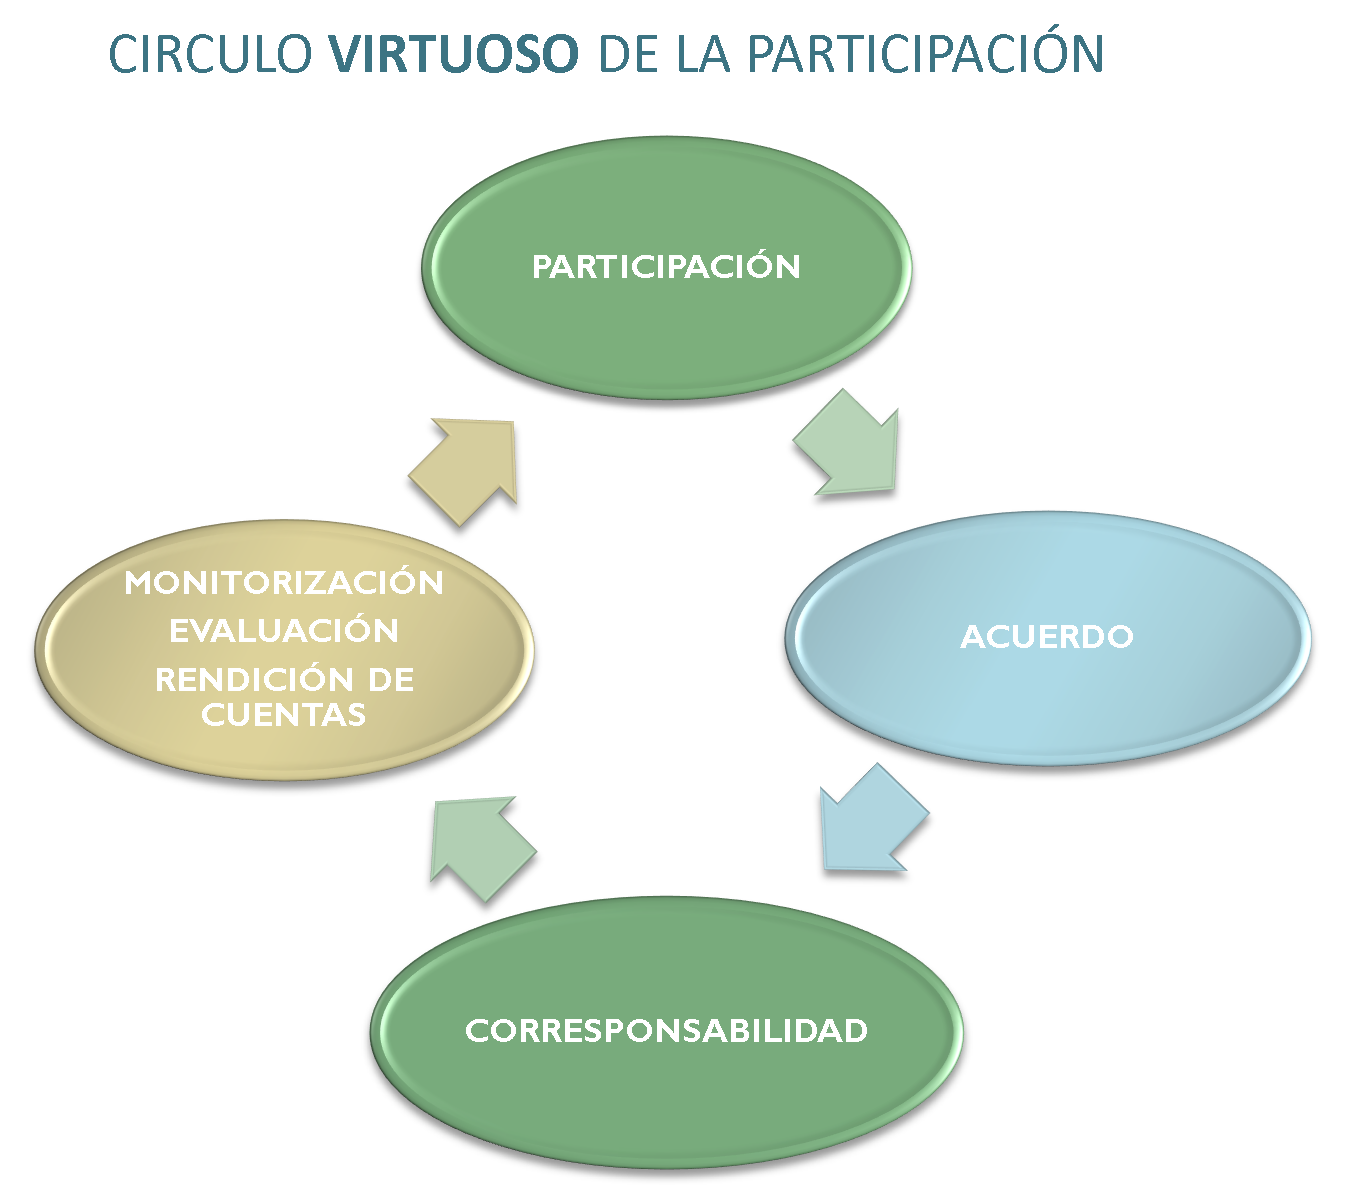 Mapa conceptual del Circulo virtuosos de la participación